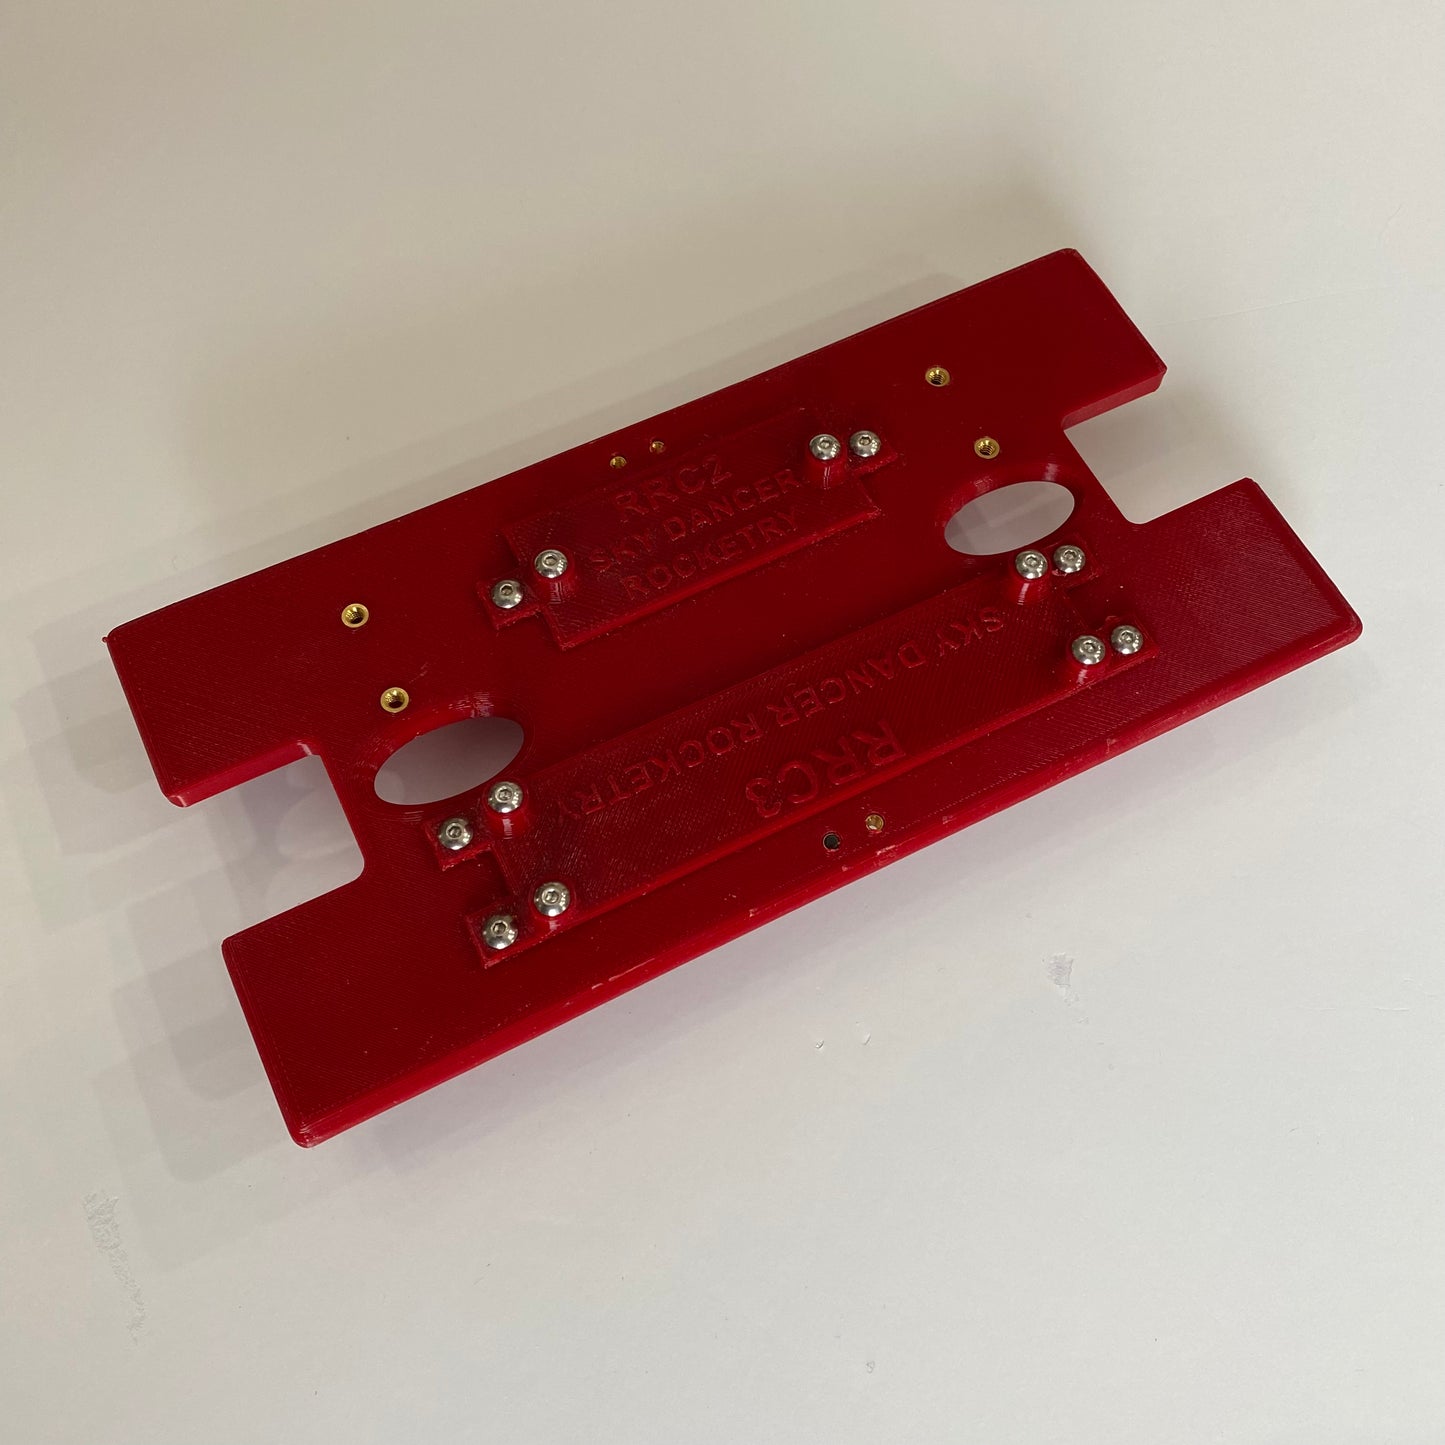 SDR 3D Printed AV Bay Sled - for 4.0" Diameter Rockets